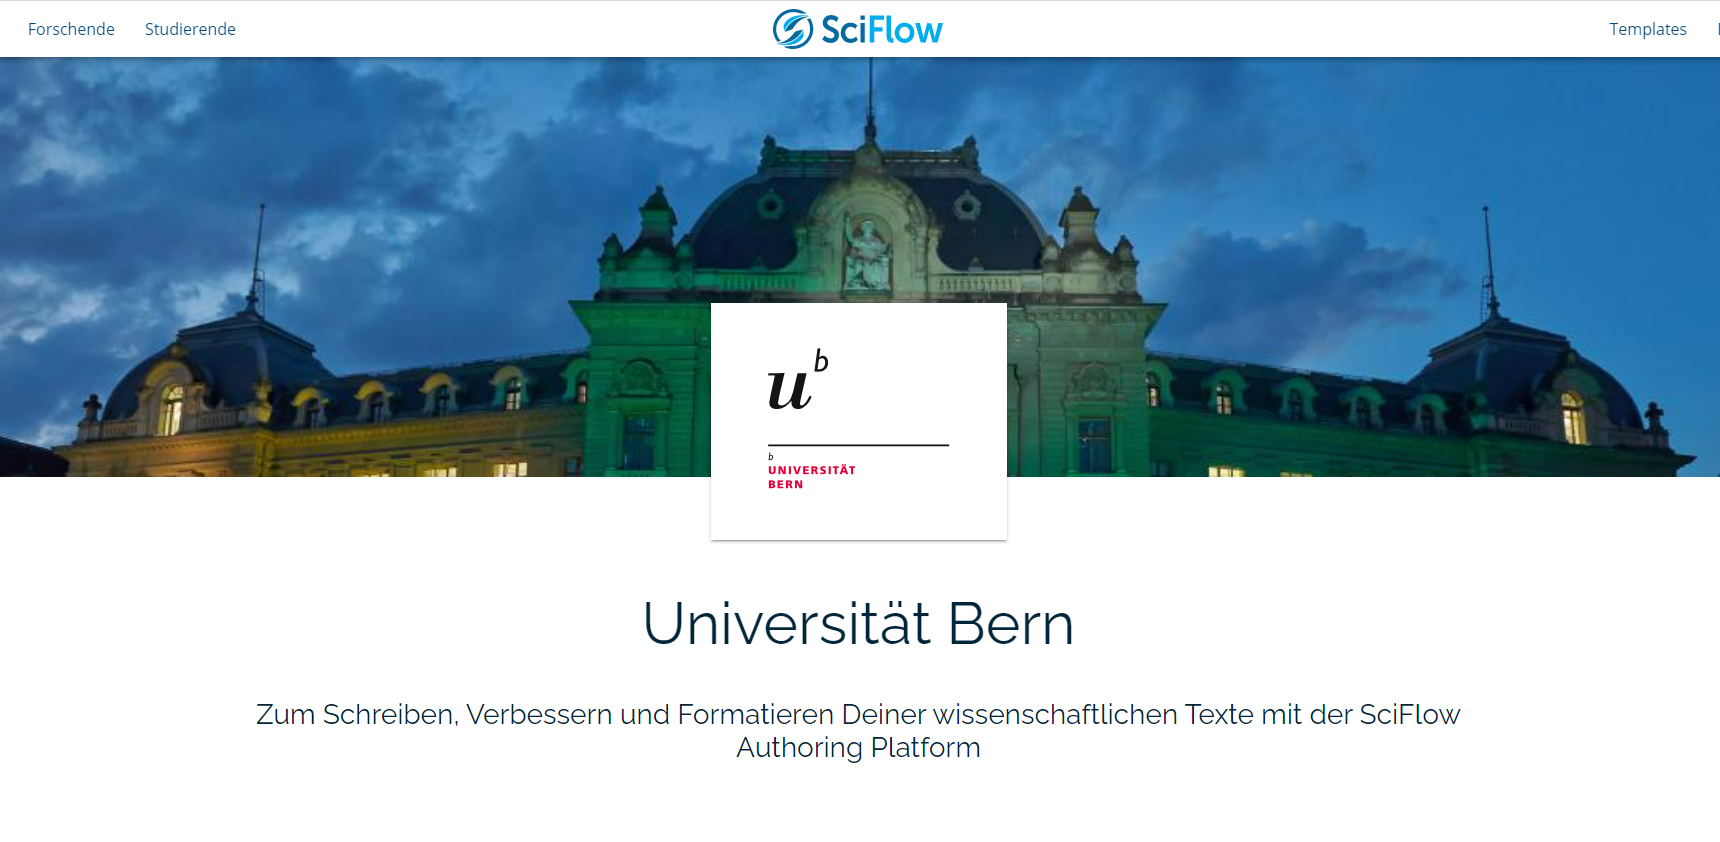 Bild des SciFlow-Portals für die Uni Bern: "Zum Schreiben, Verbessern und Formatieren Deiner wissenschaftlichen Texte mit der SciFlow Authoring Platform"